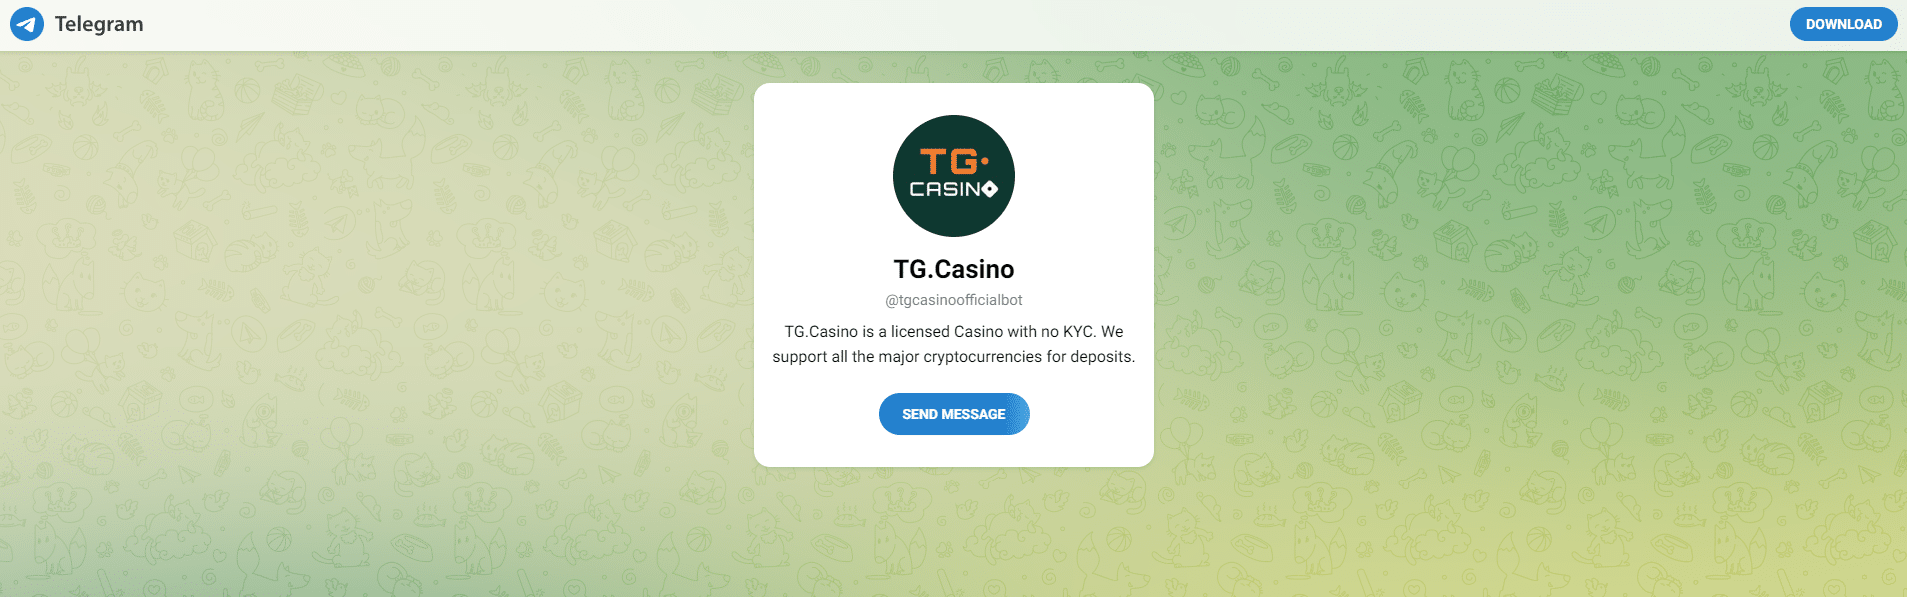 casino bitcoin TG.Casino telegram